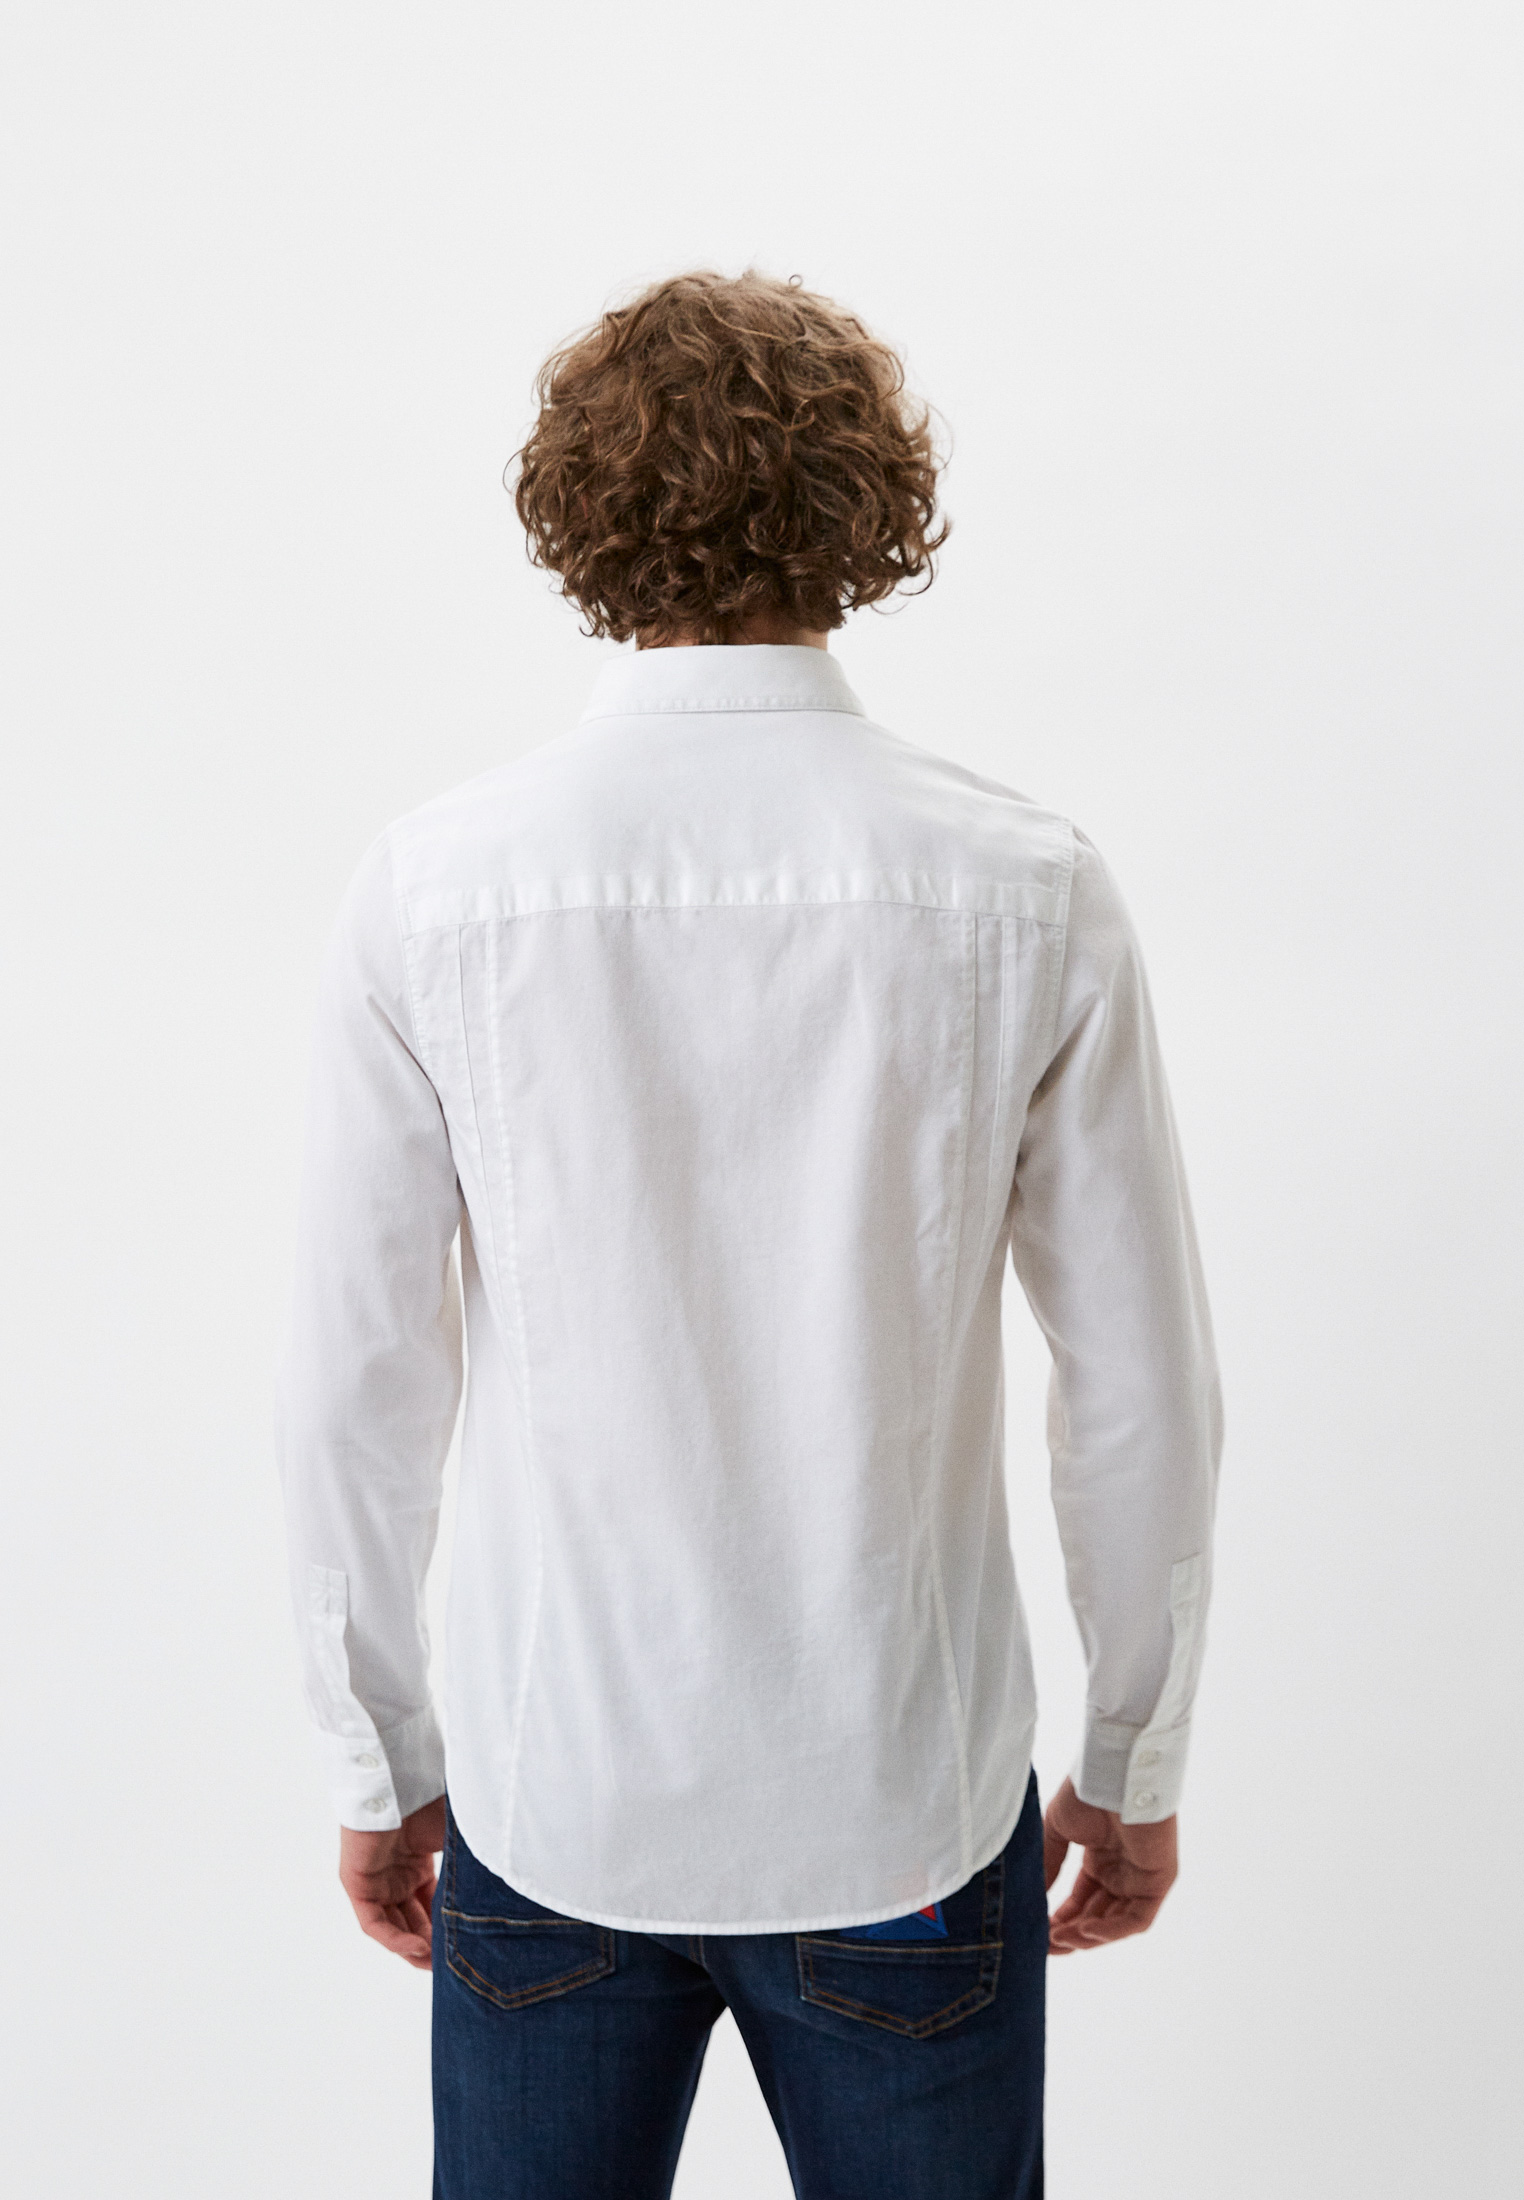 Рубашка с длинным рукавом Bikkembergs (Биккембергс) C C 066 04 T 9623: изображение 3